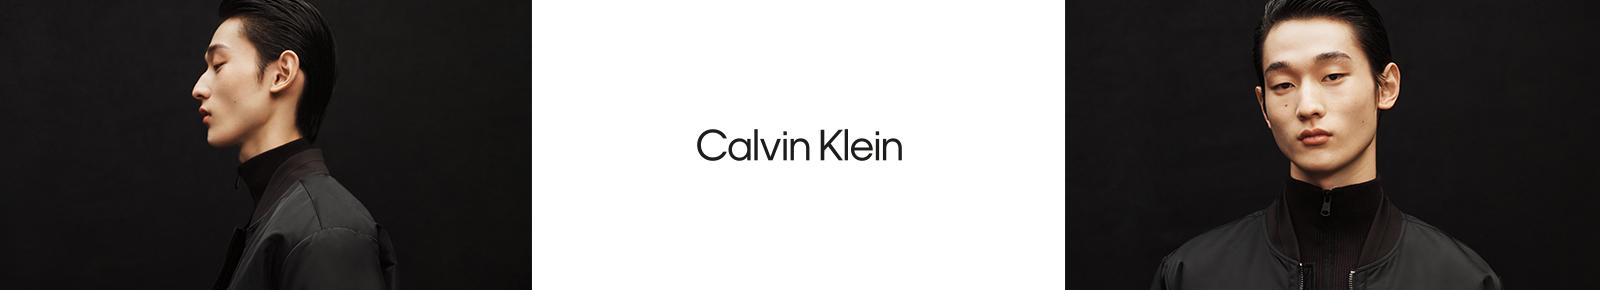 Men's Calvin Klein